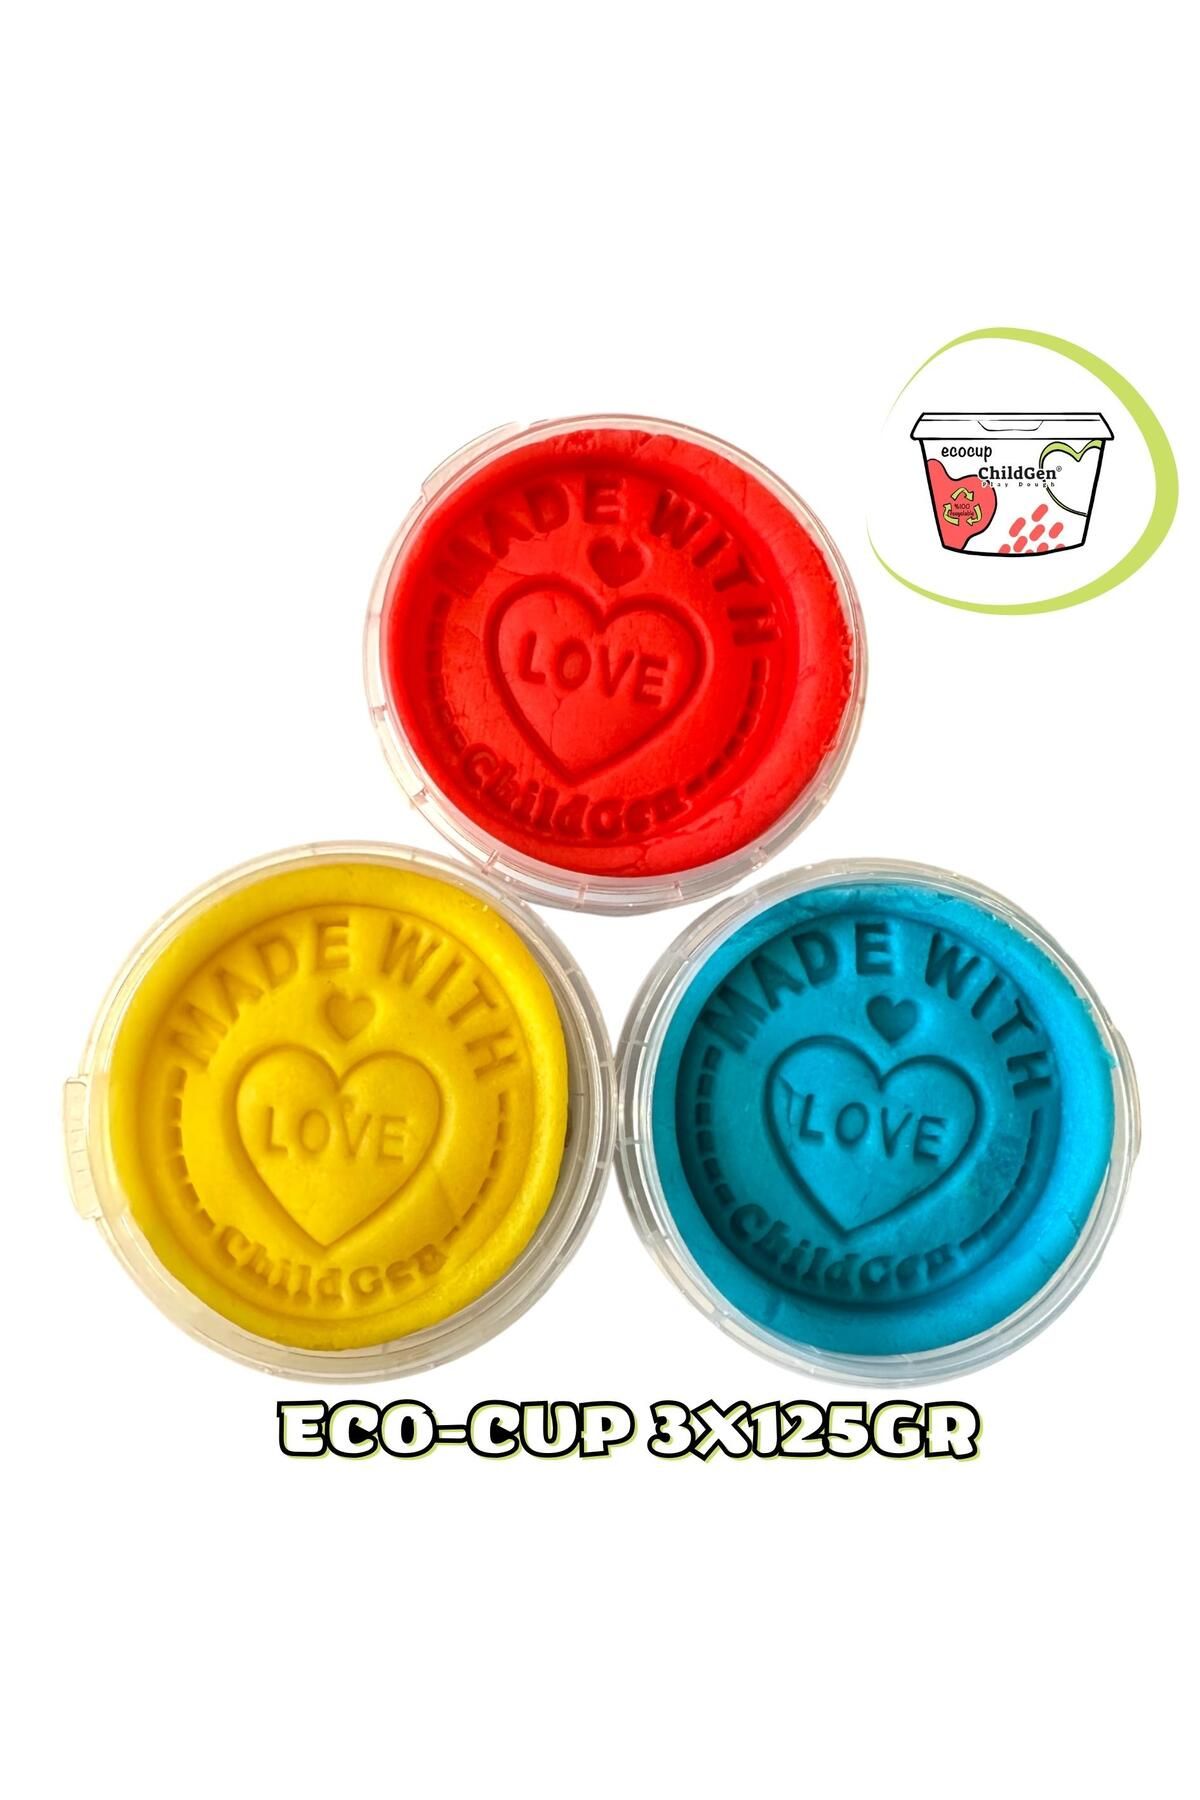 ChildGen Doğal Oyun Hamuru - Eco Cup- 3'lü Ana Renkler (mavi - Kırmızı - Sarı) 3x125gr